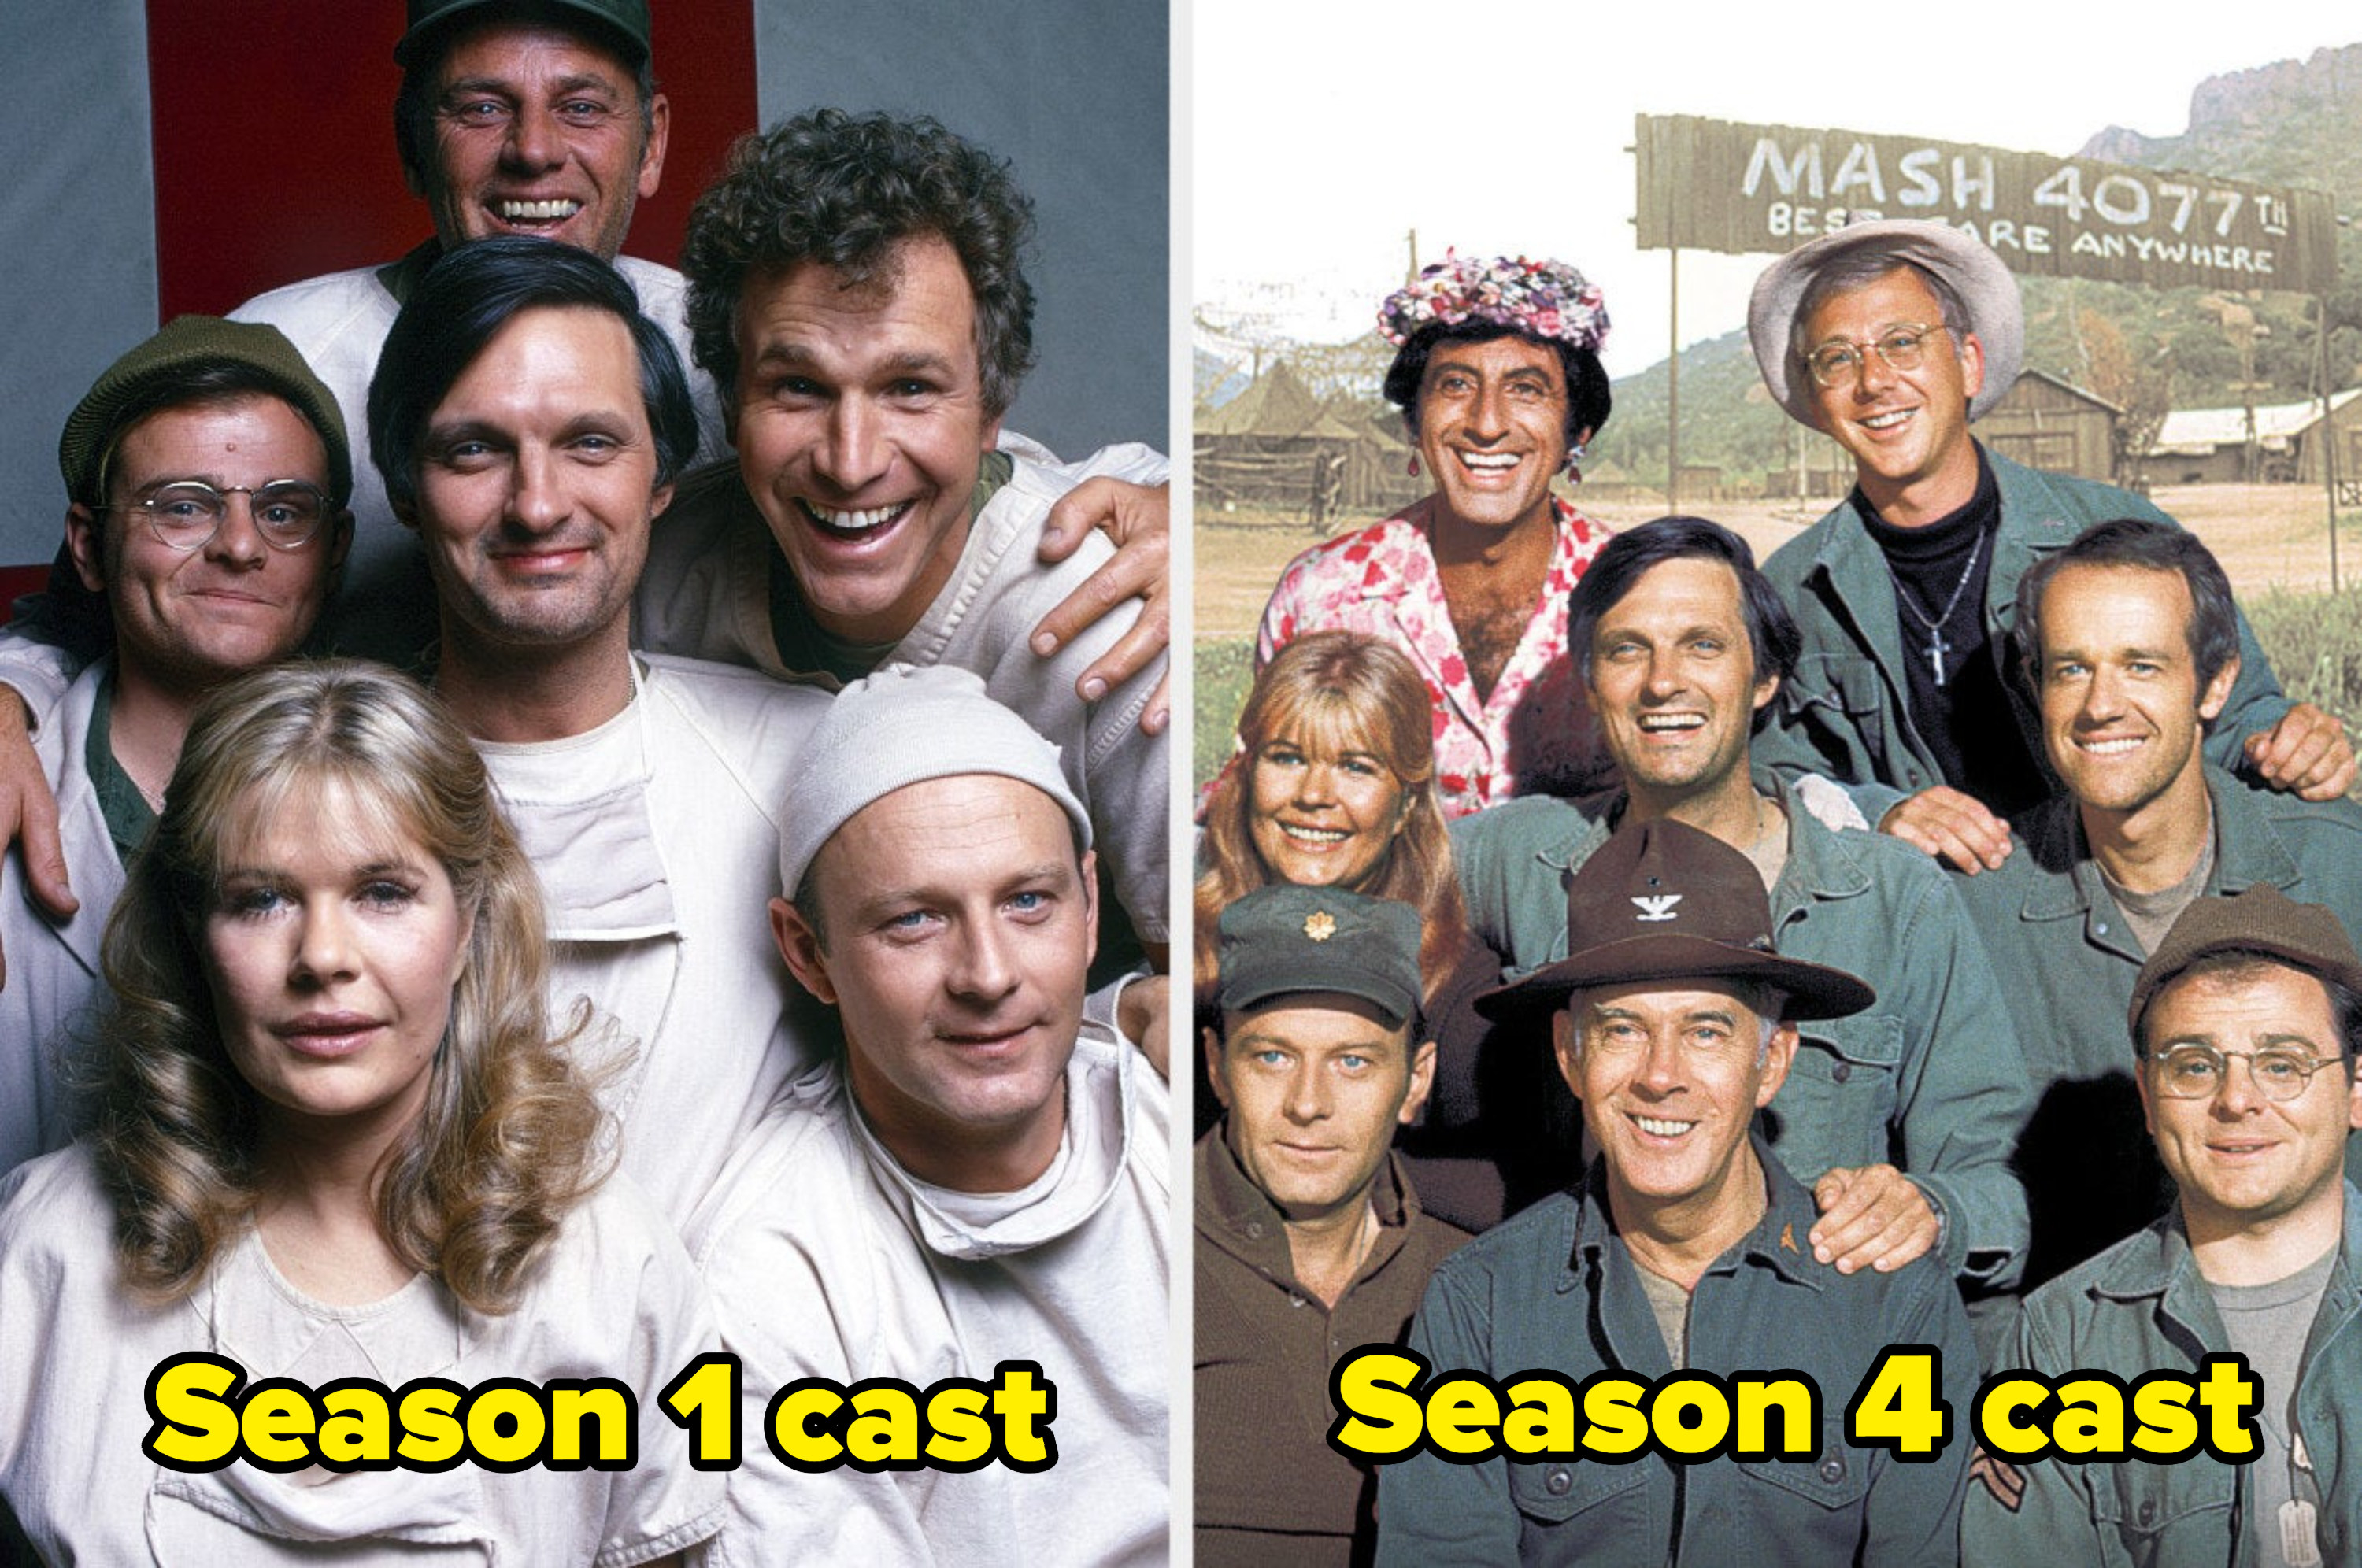 Season 1 cast vs season 4 cast